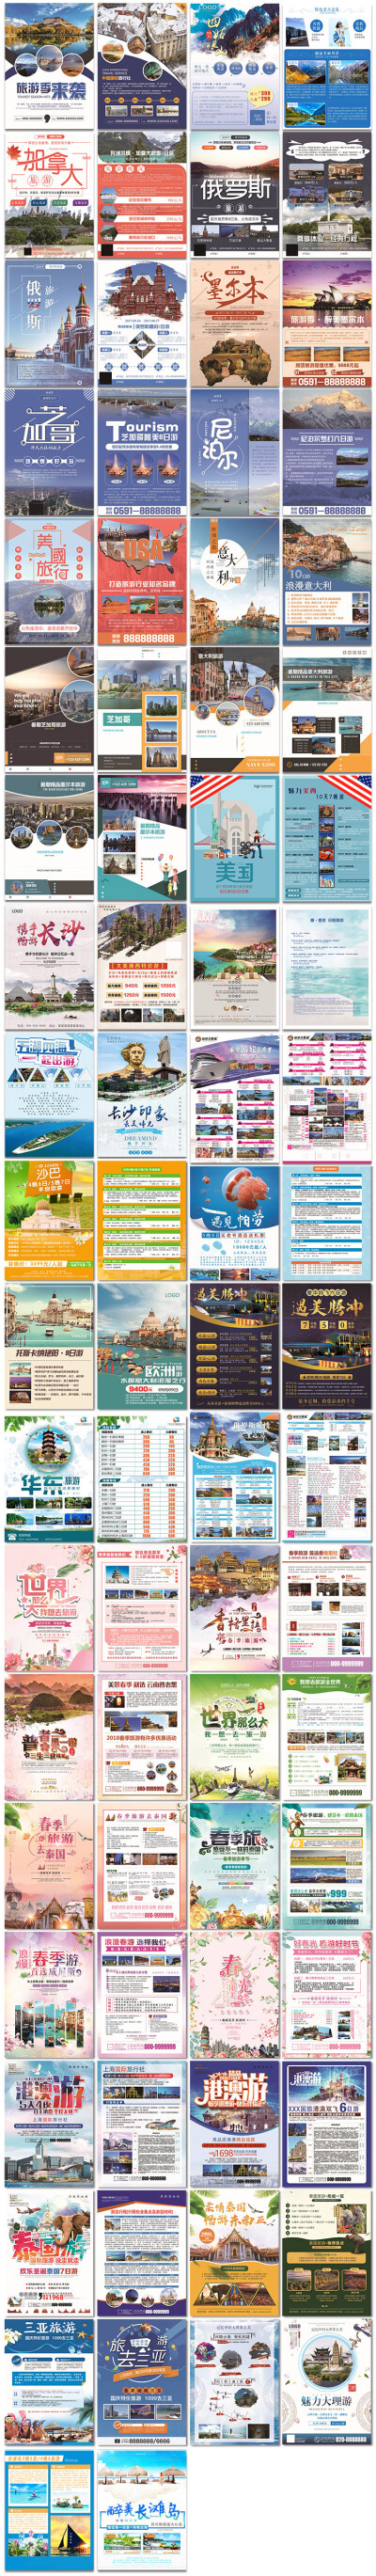 旅游旅行社团玩乐景点外国dm宣传单页海报封面psd模板素材设计